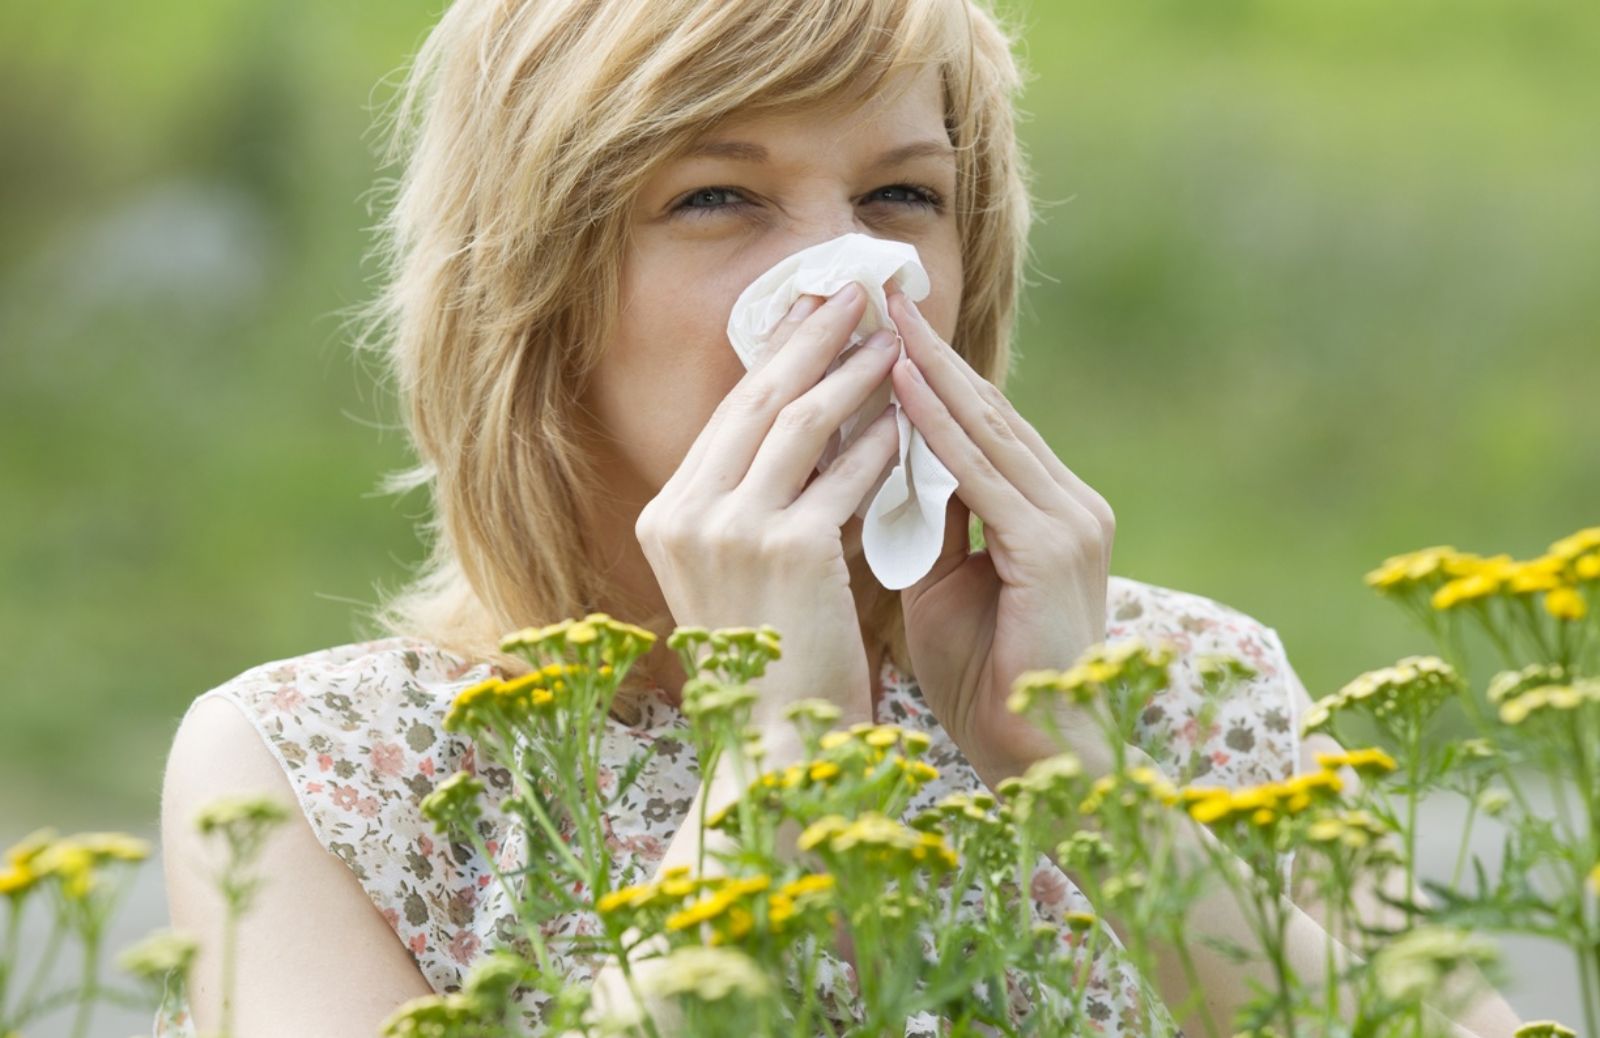 Allergie primaverili, lo stress può aumentare i sintomi